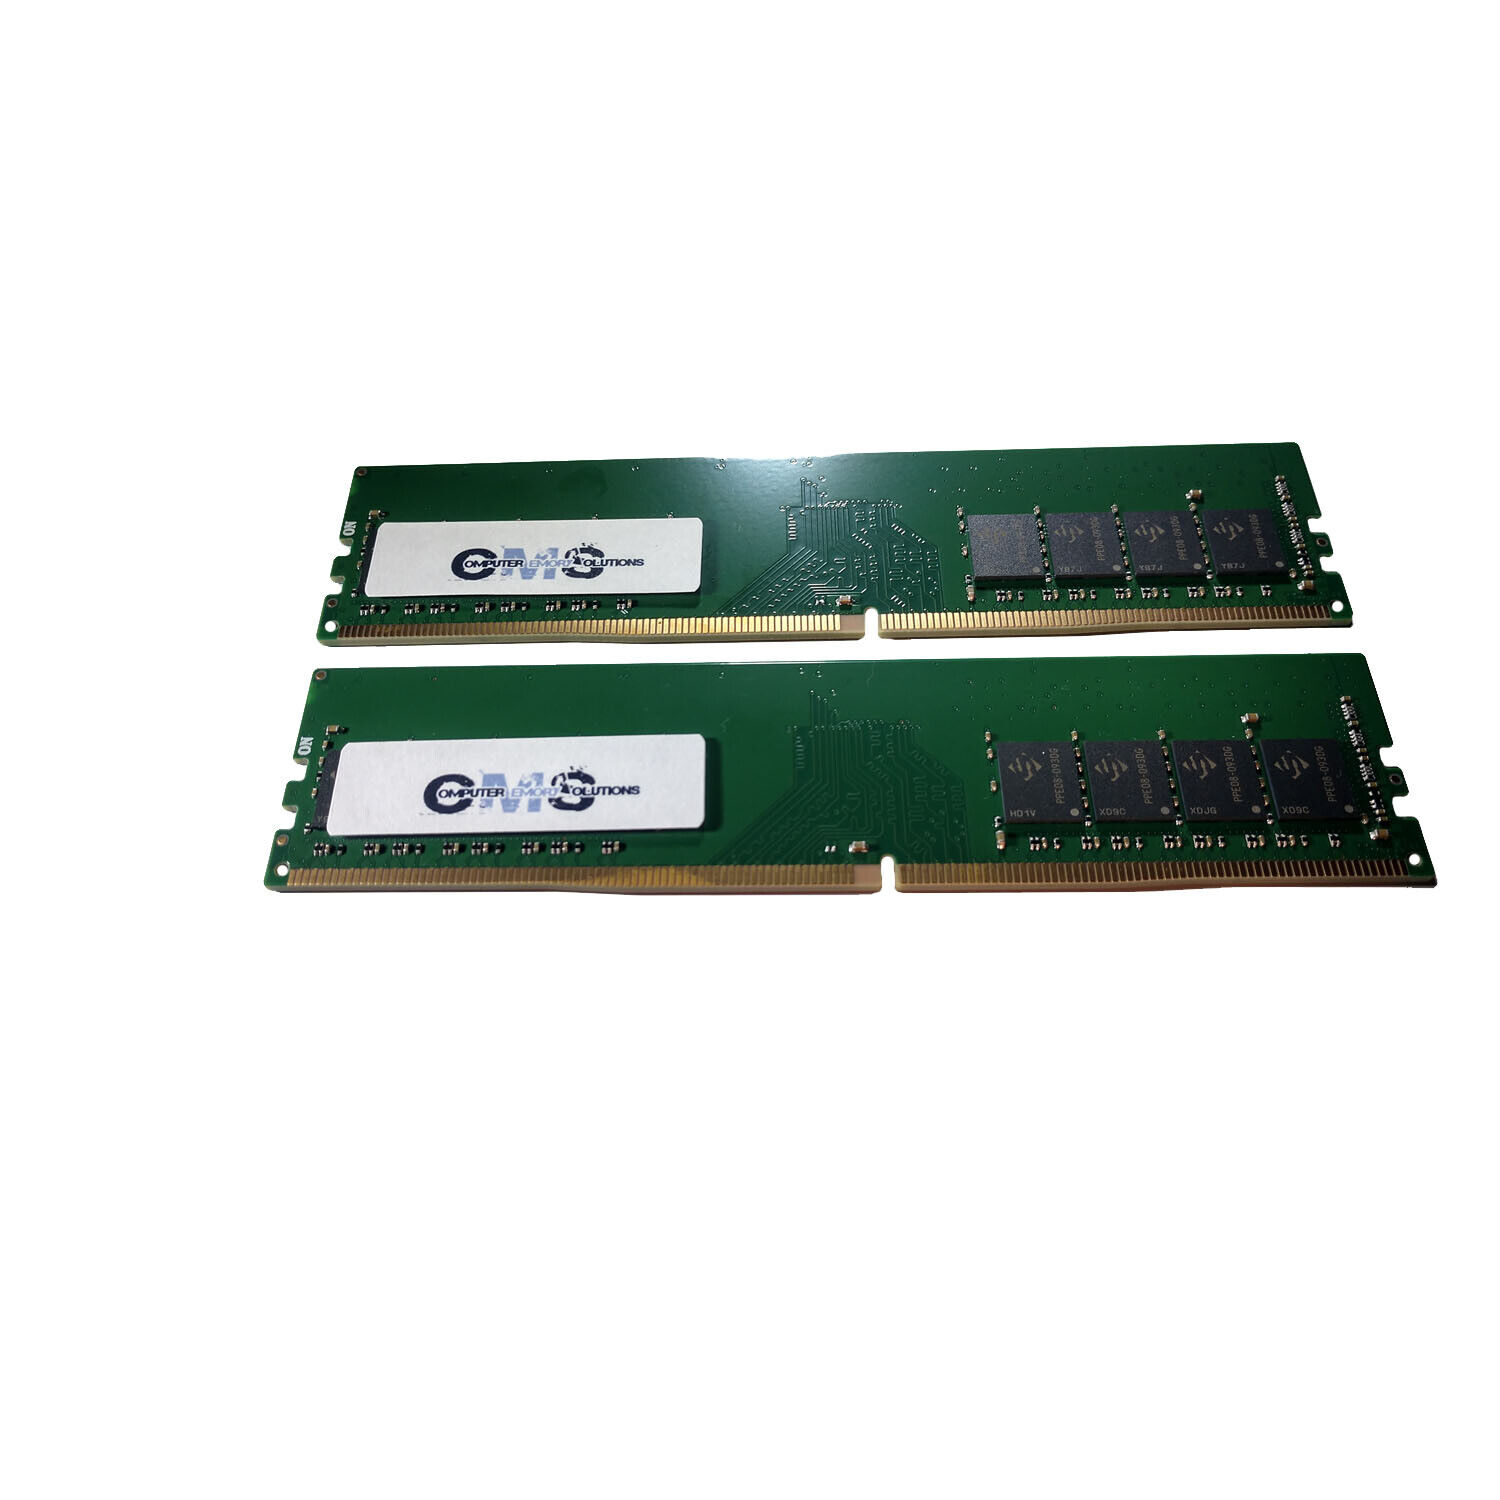 再×14入荷 A-TECH A-Tech 64GB RAM Kit for Lenovo ThinkStation P350 Tiny (2 x  32GB) DDR4 3200 送料無料